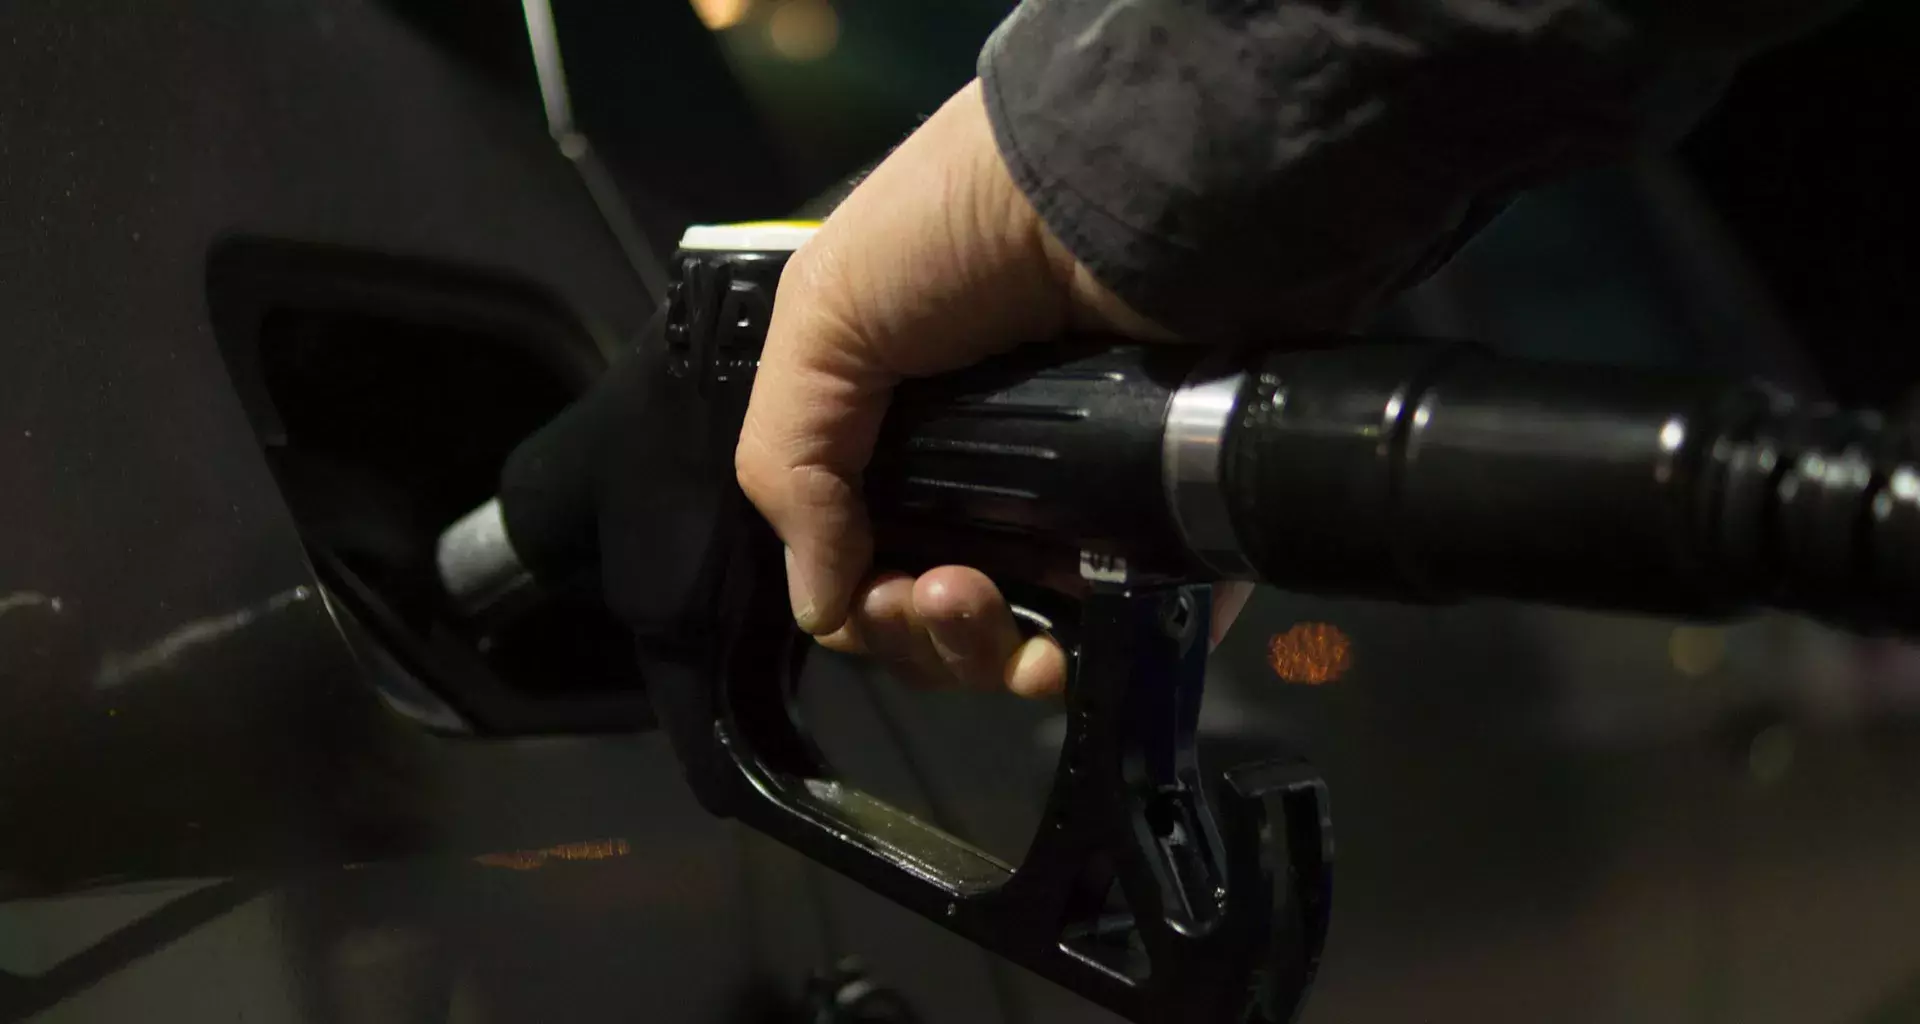 La gasolina bajó de precio, ¿sabes por qué? experto te explica